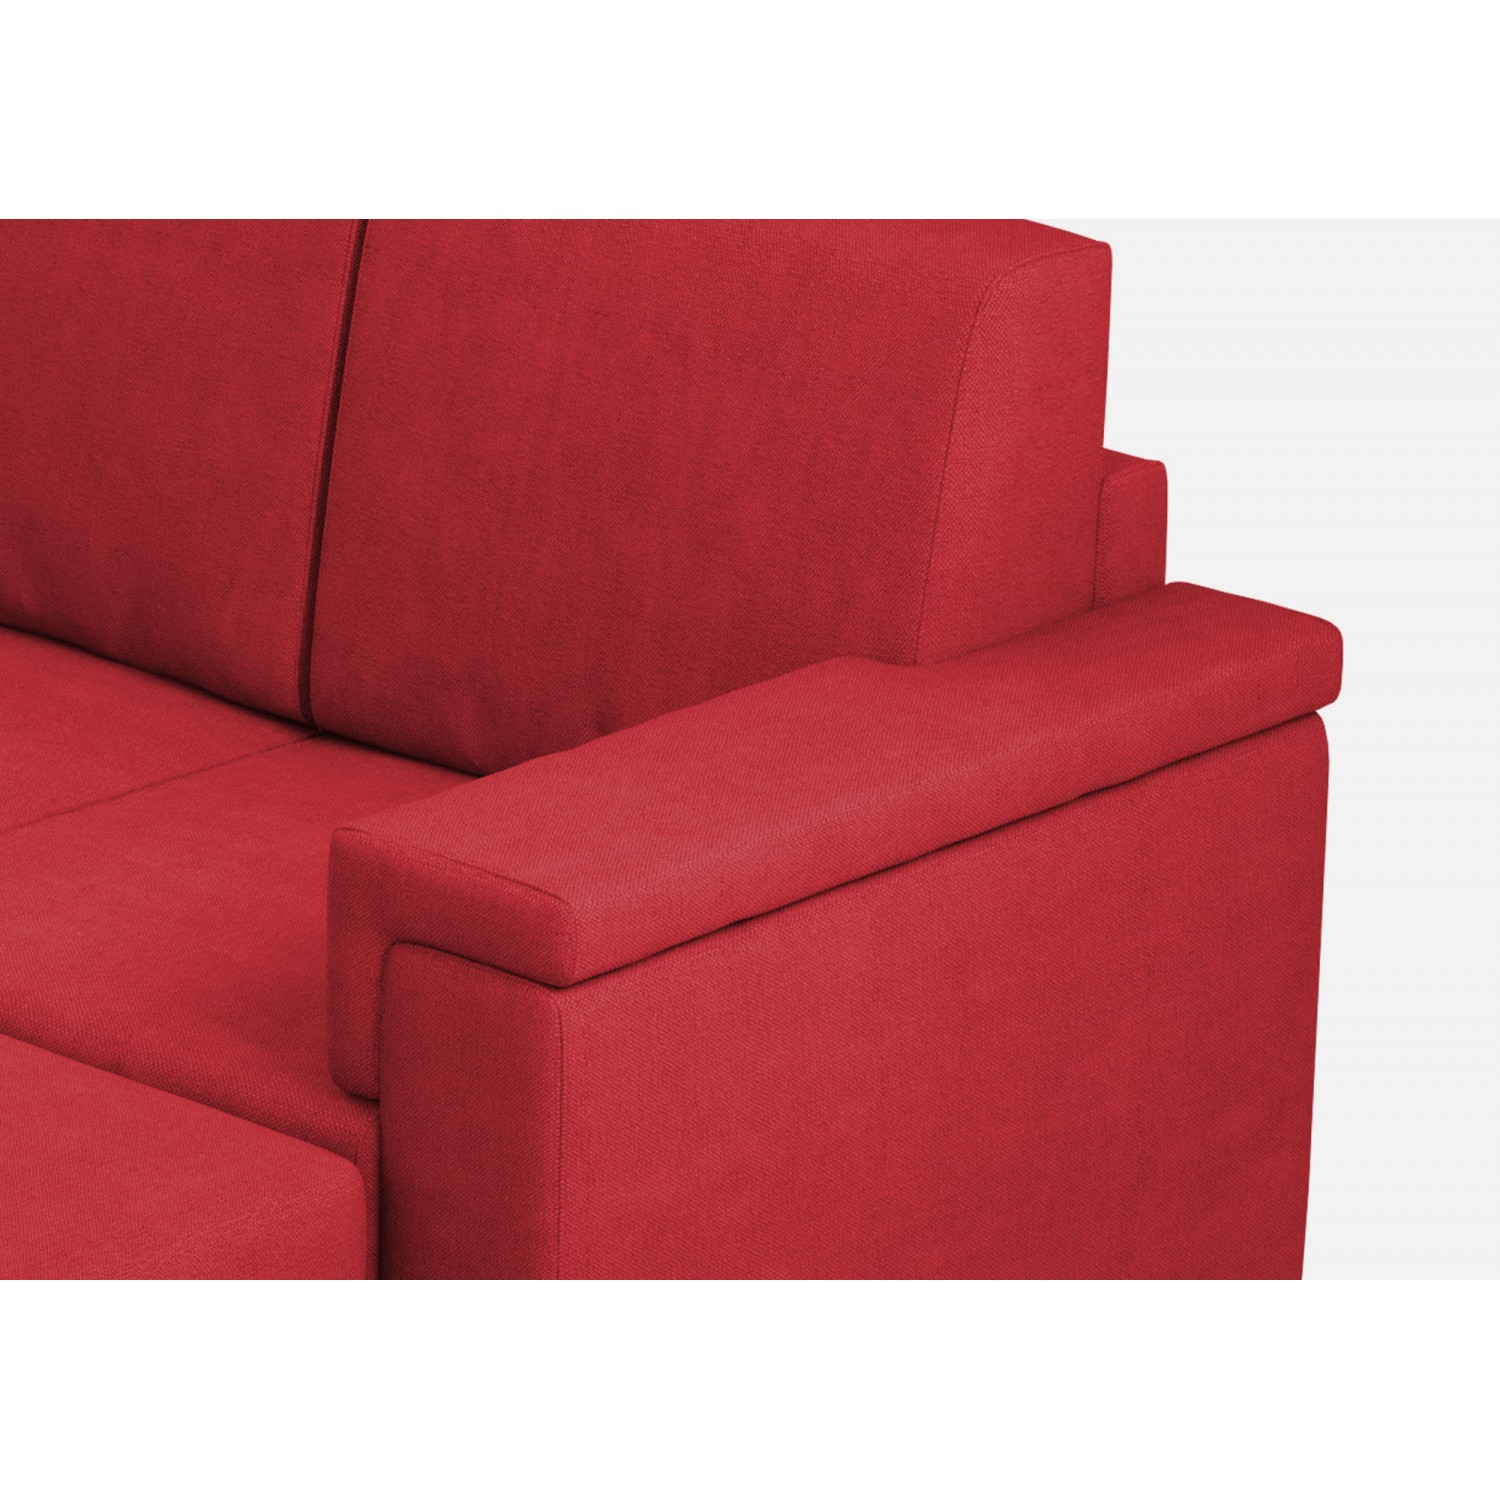 Ityhome Divano Marrak 3 posti (tre sedute da 60cm) + pouf misure esterne L.208 P.155 colore rosso